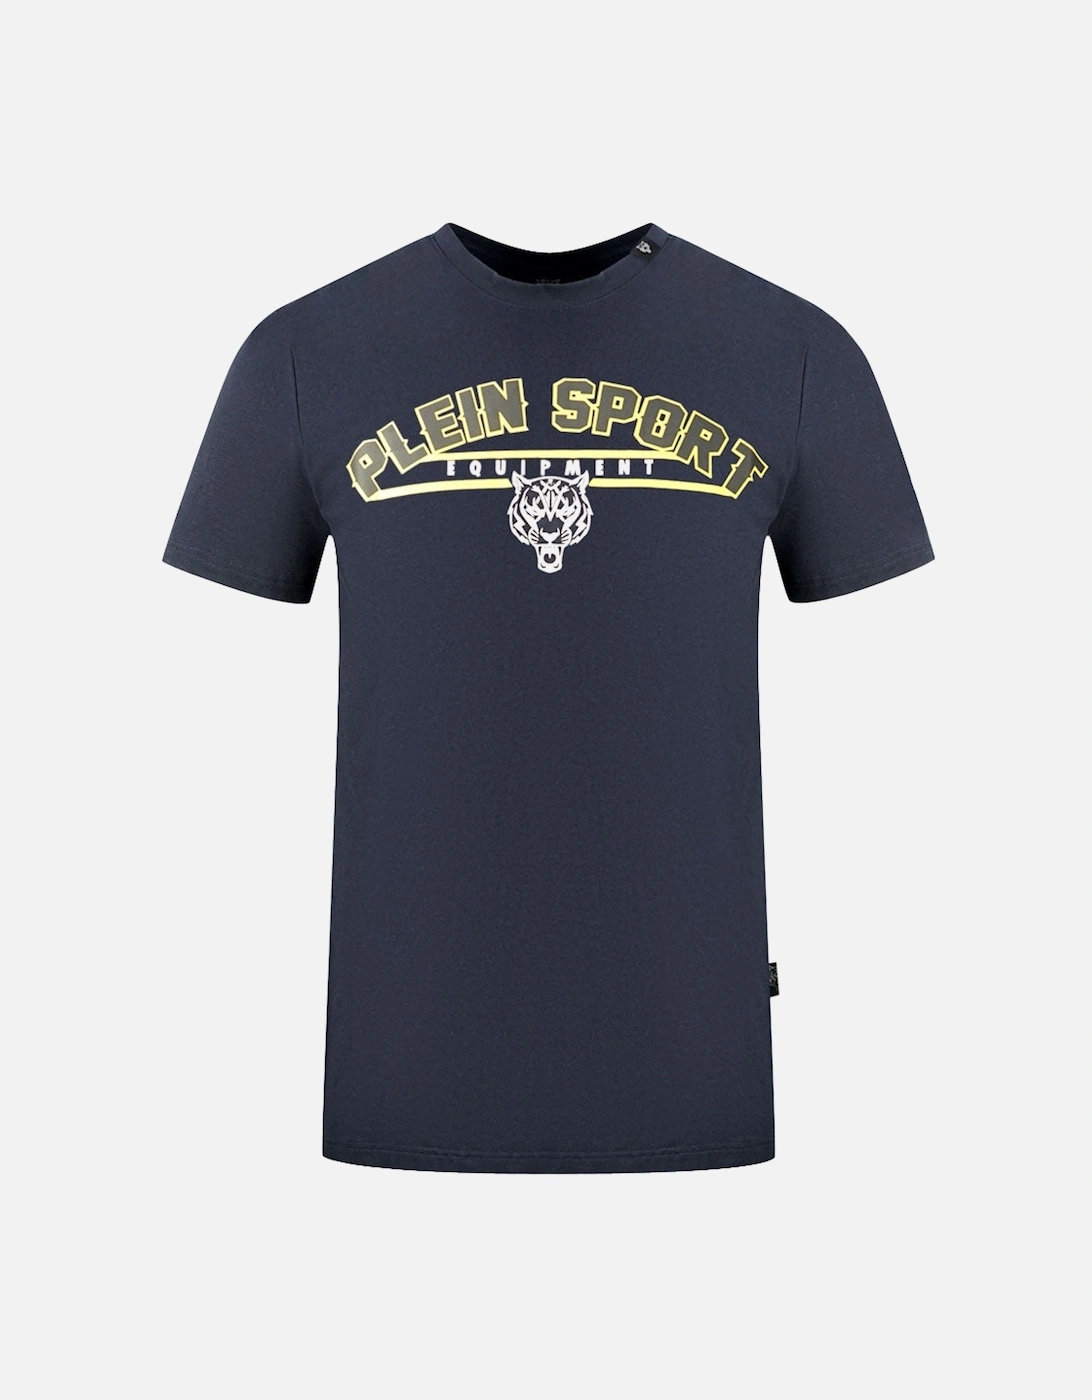 Plein Sport Equipment Navy Blue T-Shirt, 3 of 2